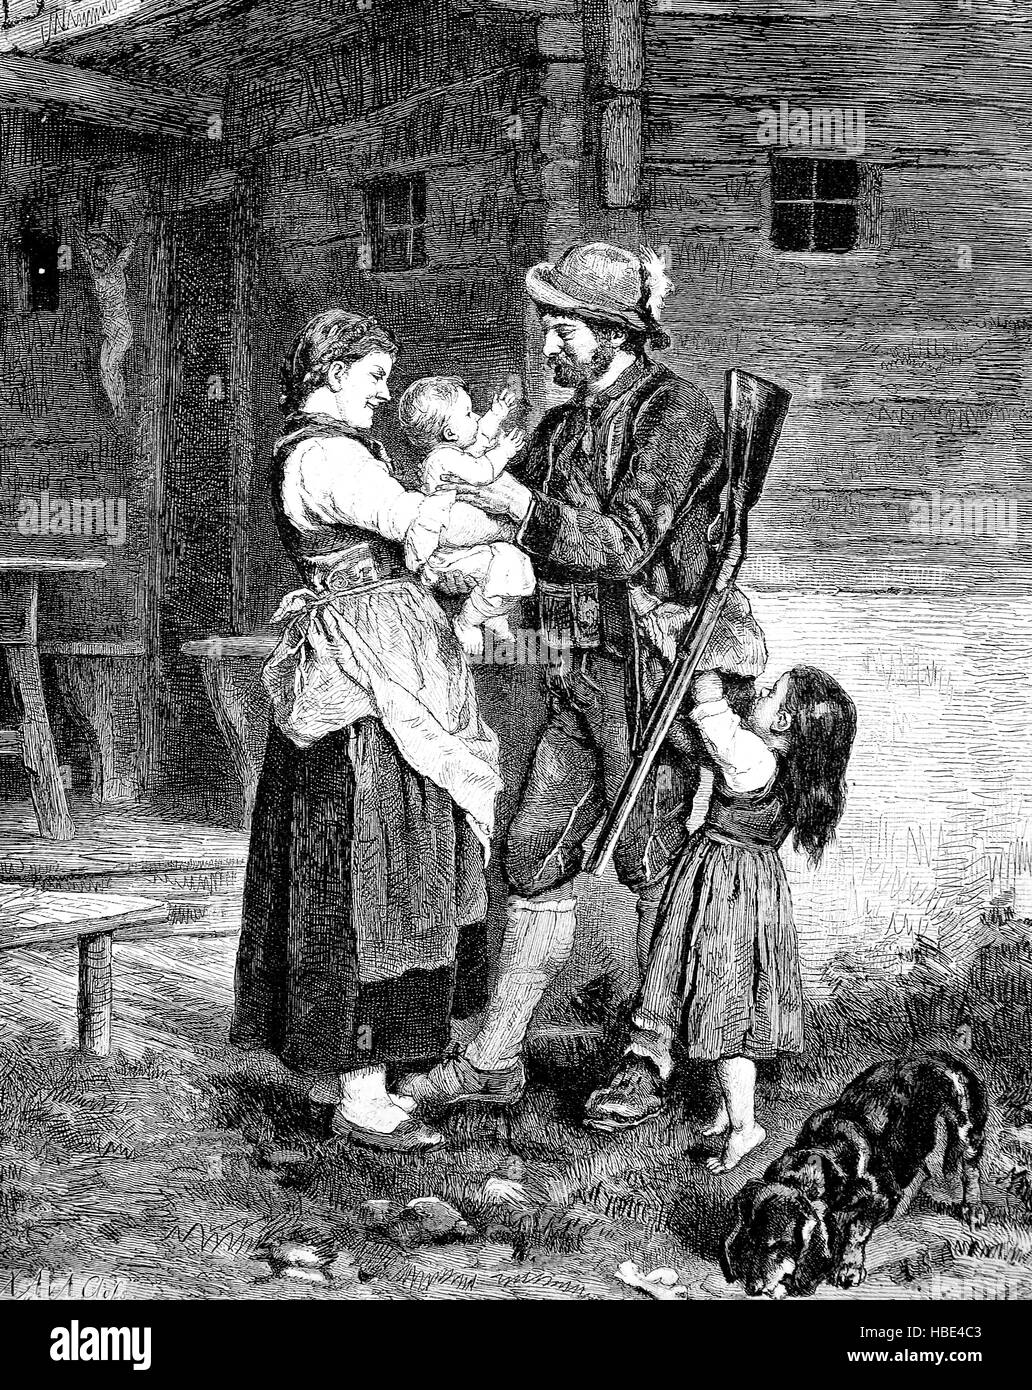 Heureux retour du chasseur pour femme et de la famille, de l'illustration, gravure sur bois de 1880 Banque D'Images